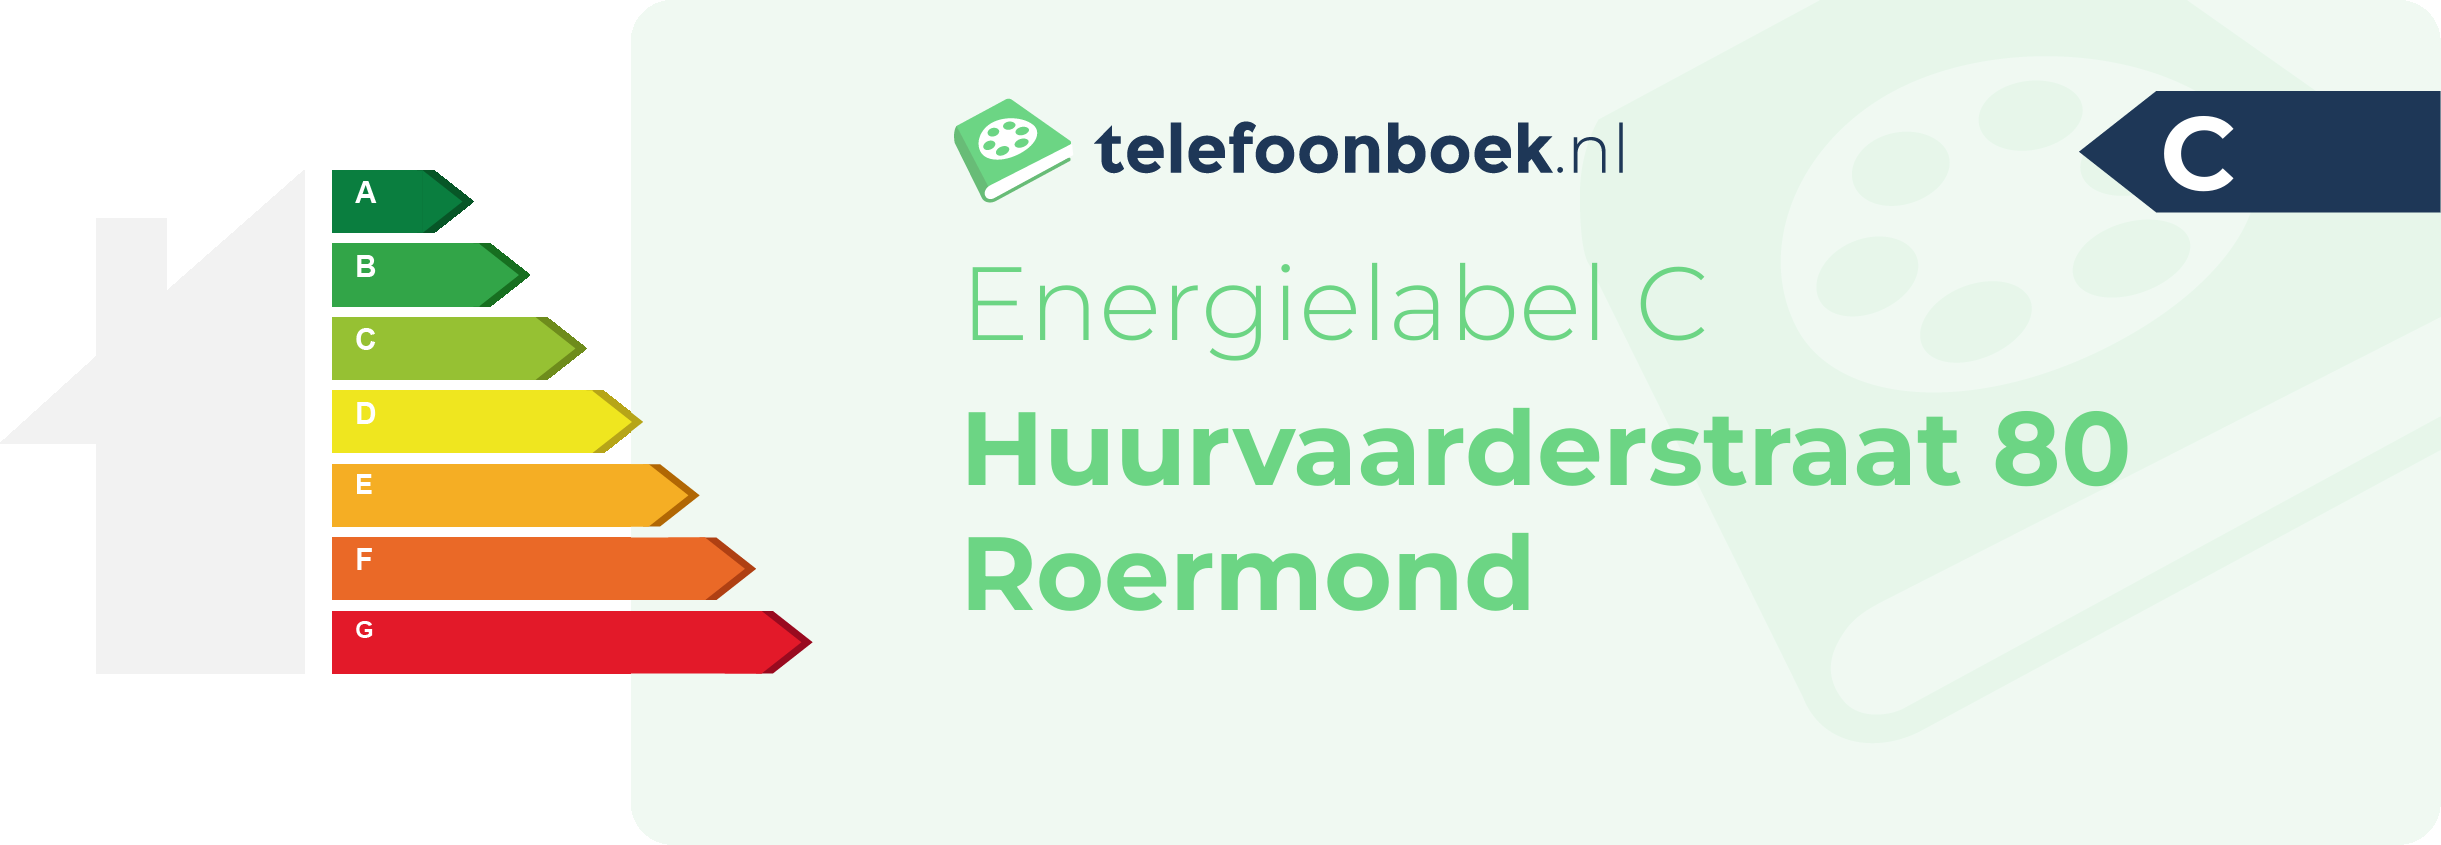 Energielabel Huurvaarderstraat 80 Roermond